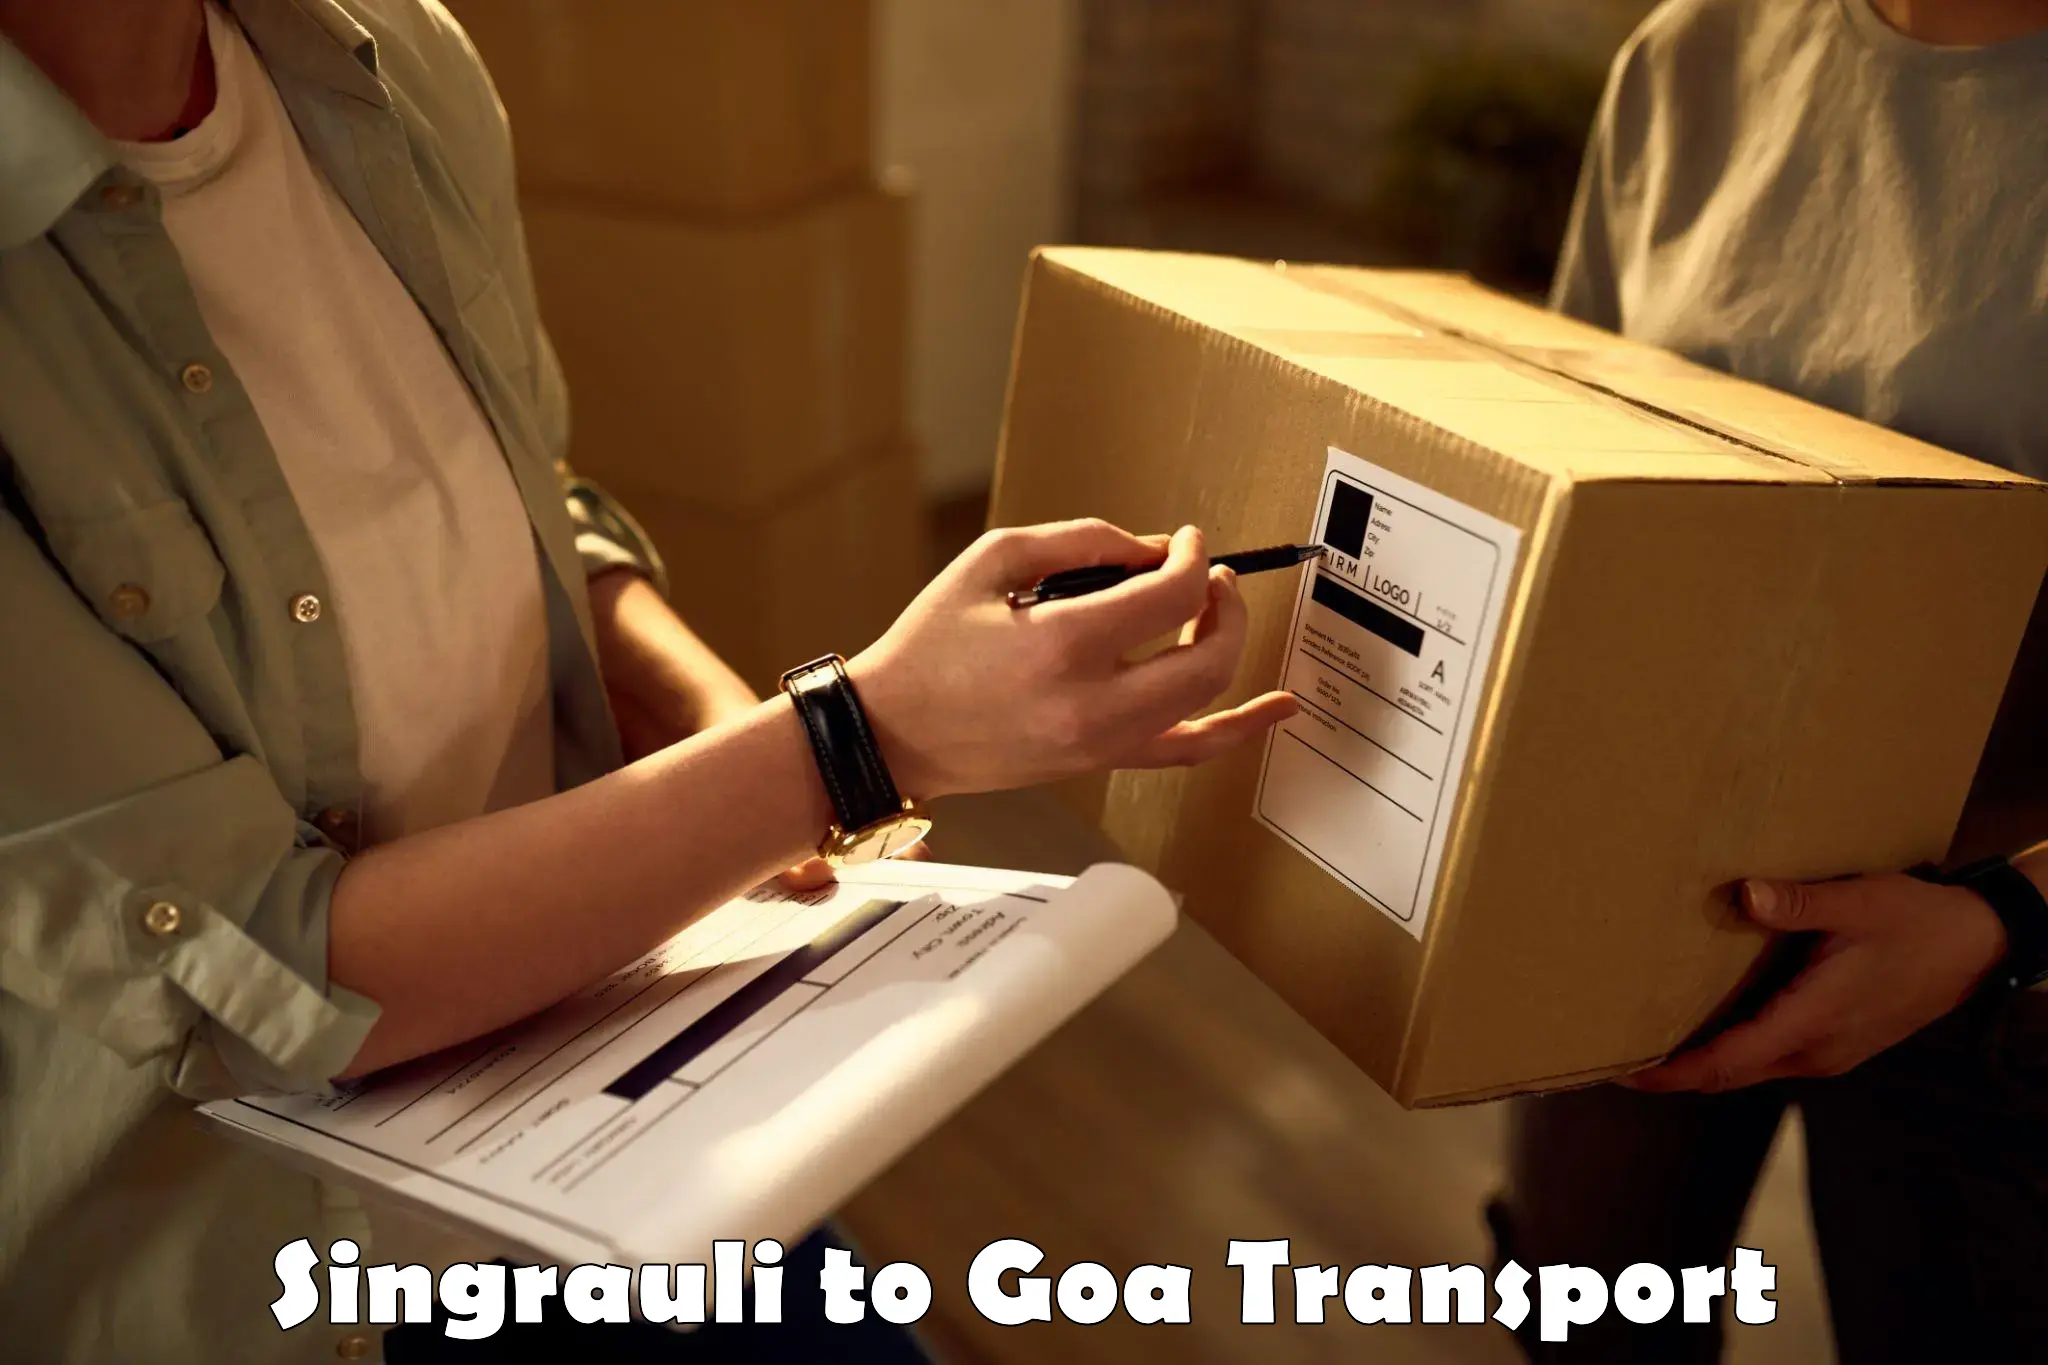 Furniture transport service Singrauli to Ponda